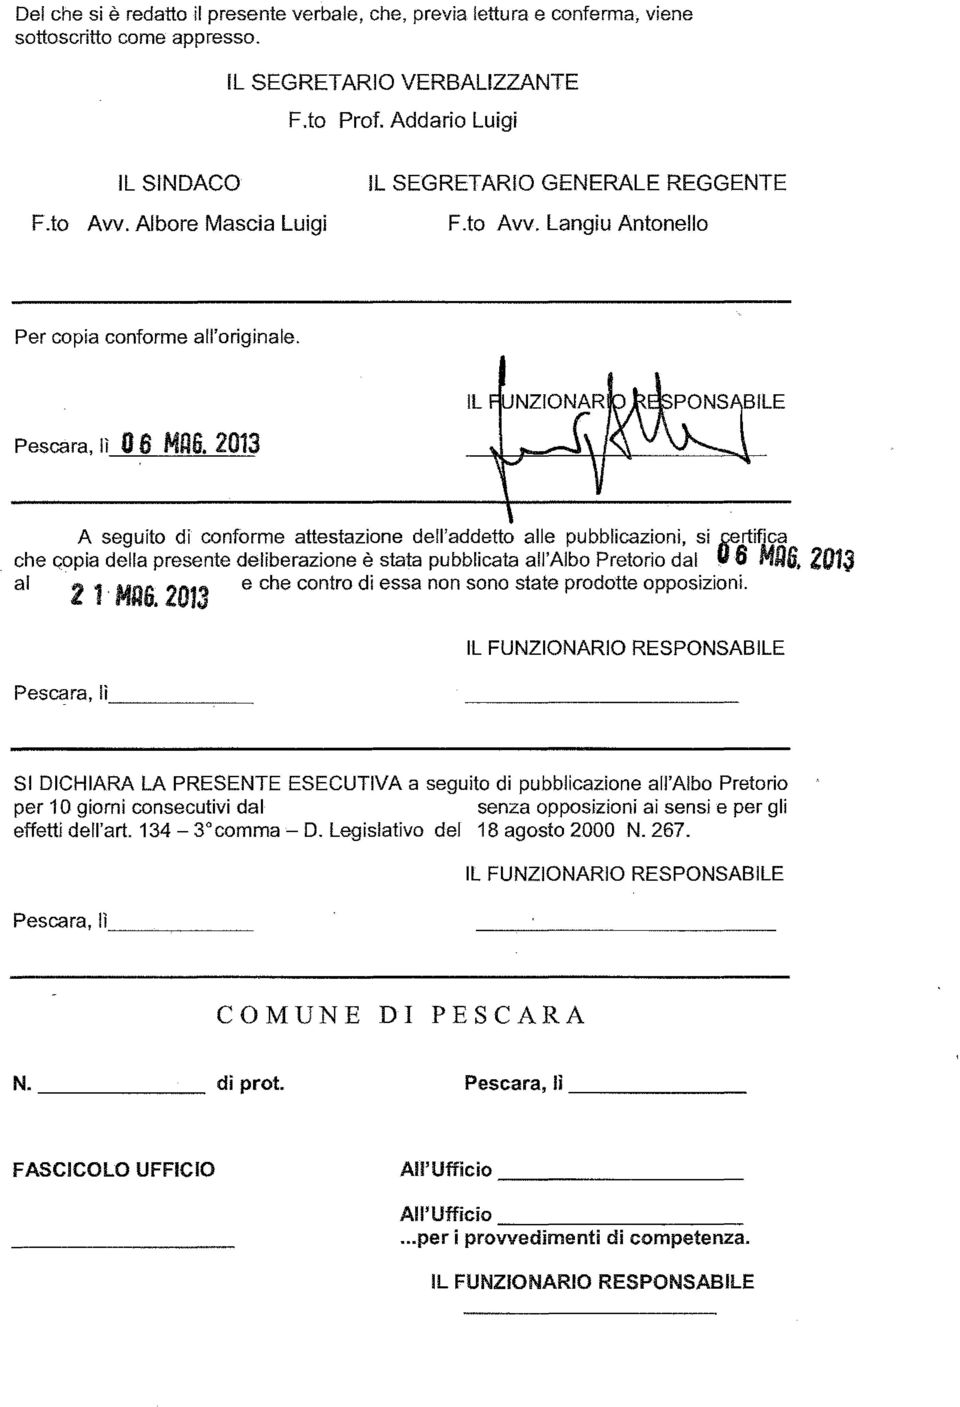 2013 A seguito di conforme attestazione defl'addetto alle pubblicazioni, si ~rtifica che Gopia della presente deliberazione è stata pubblicata all'albo Pretorio dal u6 MUG. 2013 al 21' MAG.